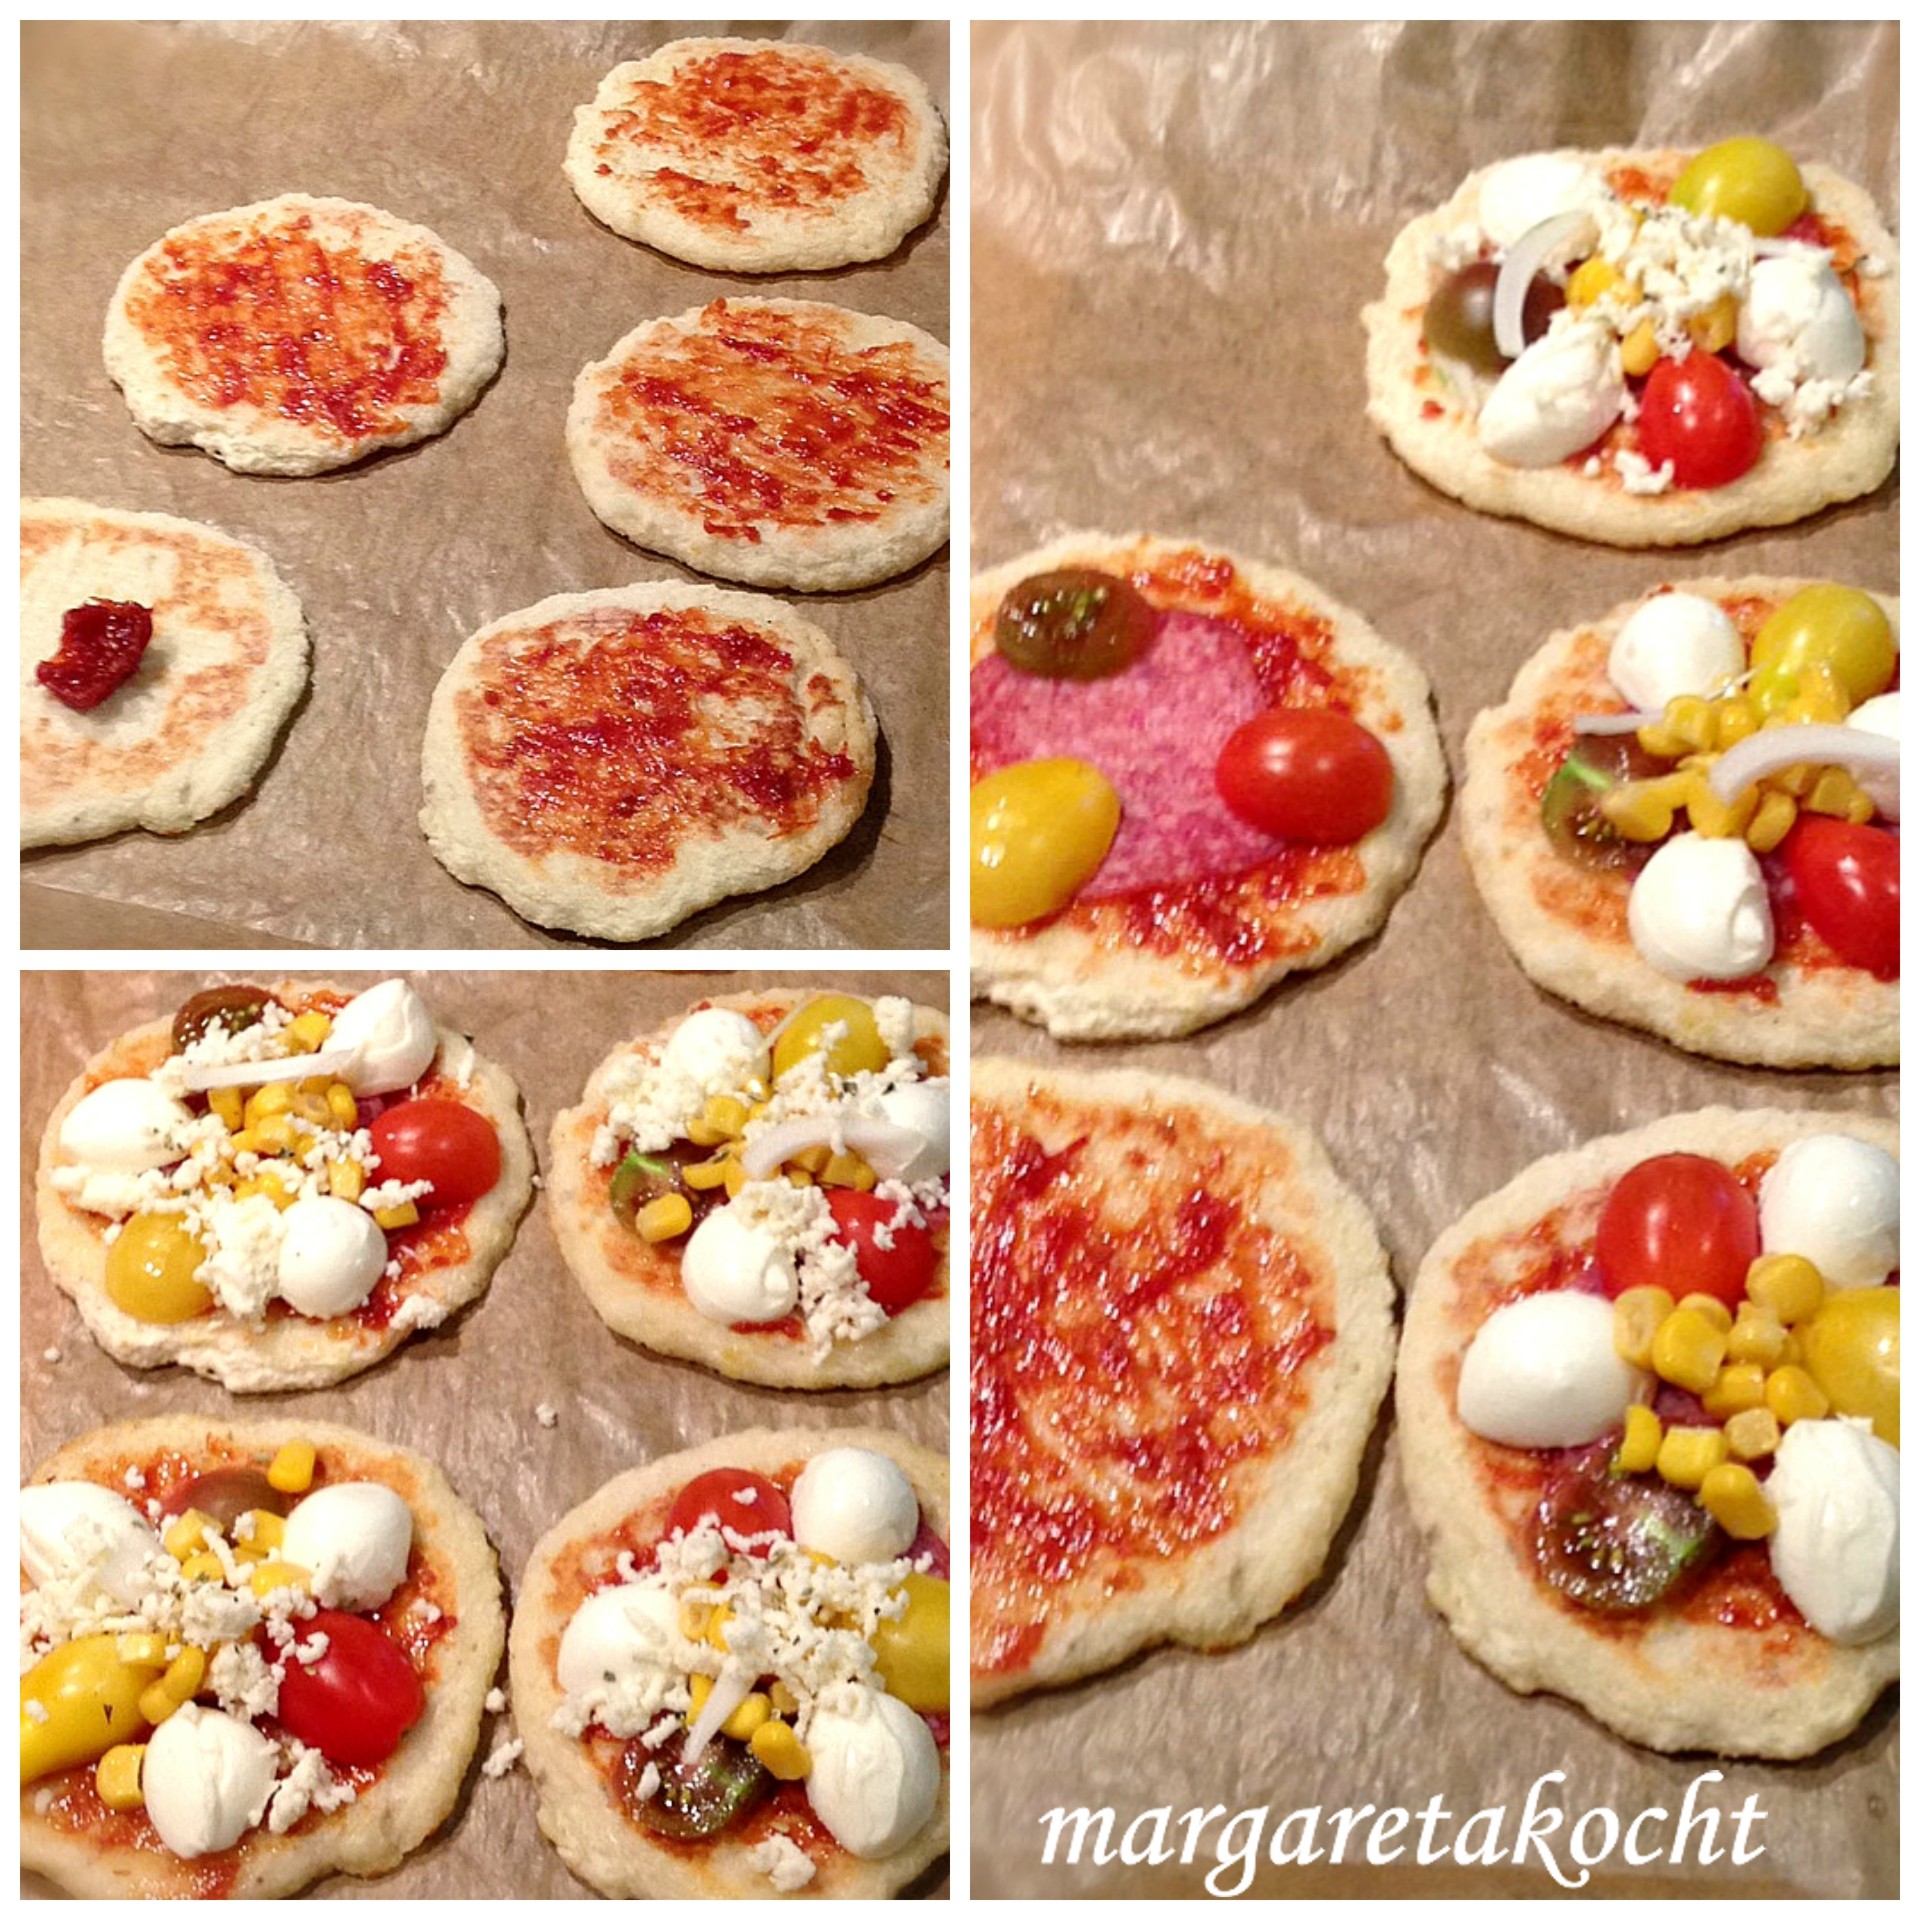 Margaretas lustige Mini-Pizzen auf Kartoffelpuffer – tolle Idee fürs ...